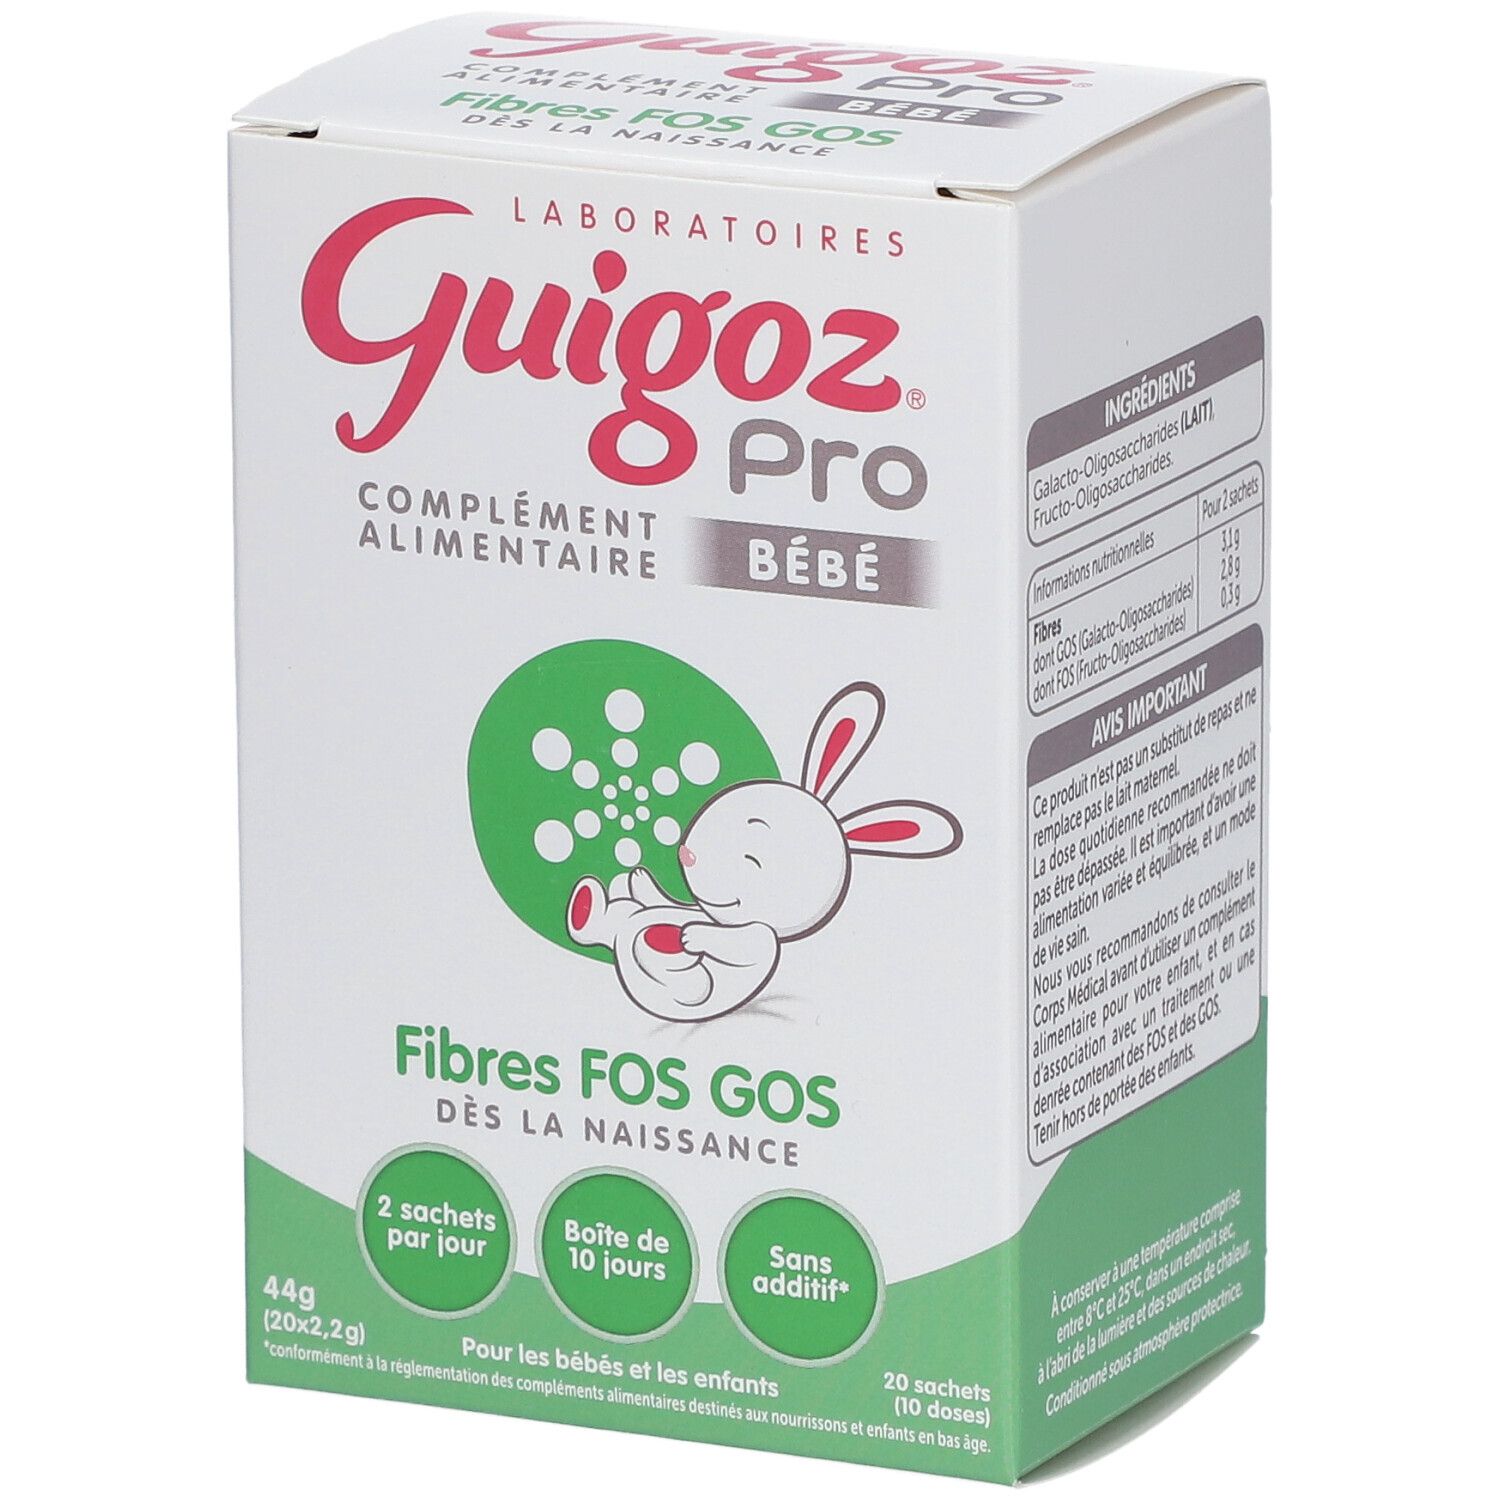 Guigoz® Pro Fibres FOS GOS